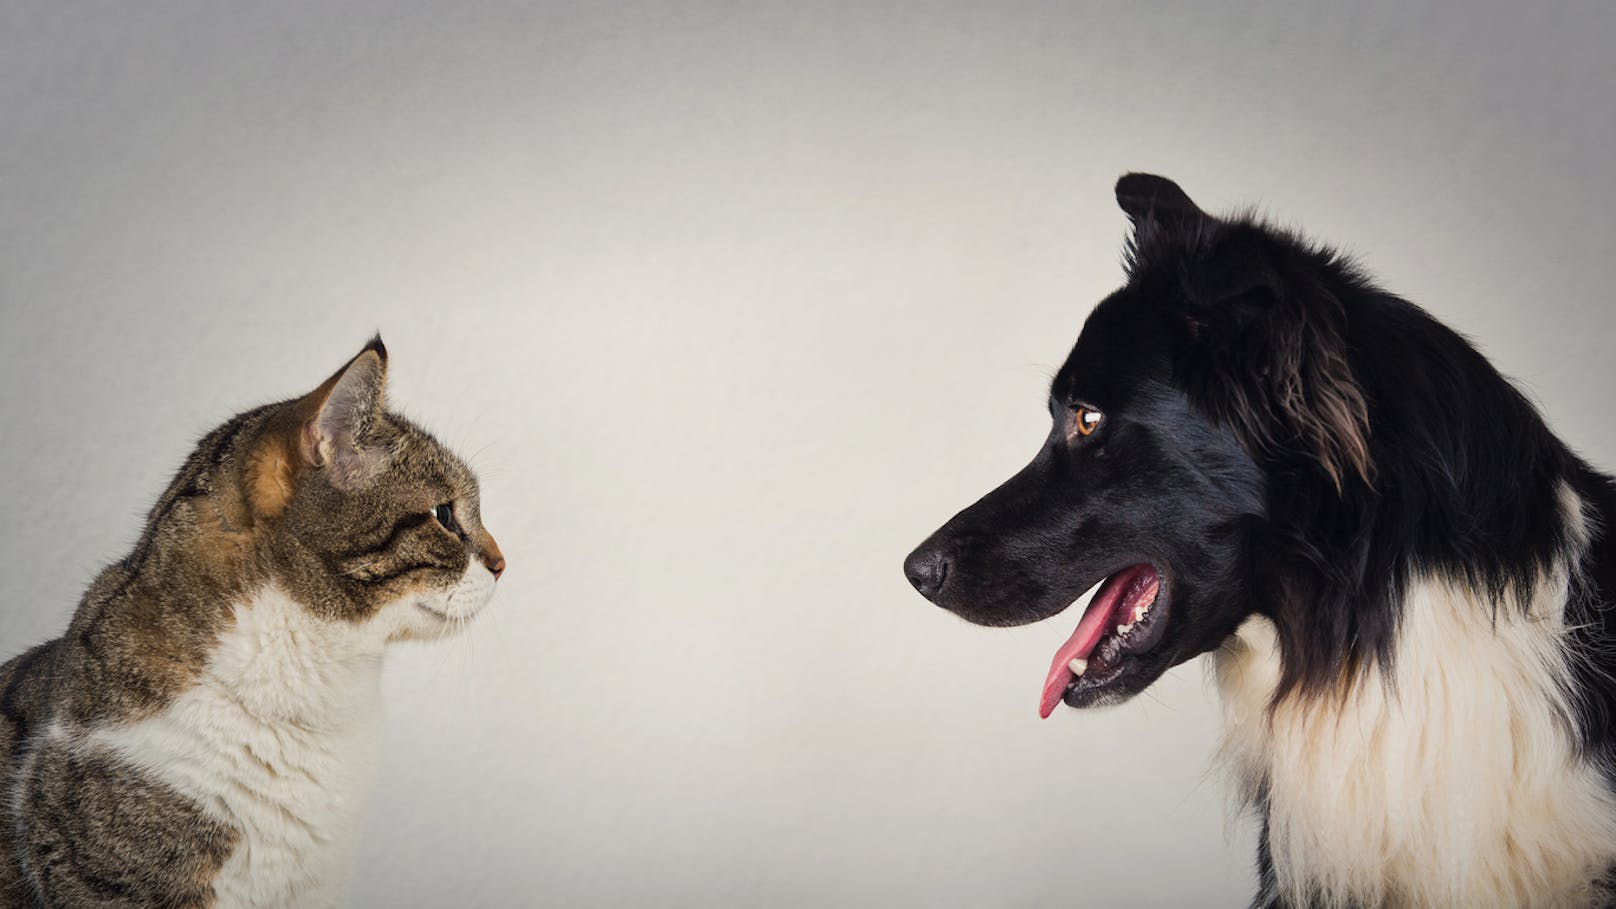 Katze und Hund im Duell - wer ist schlauer?